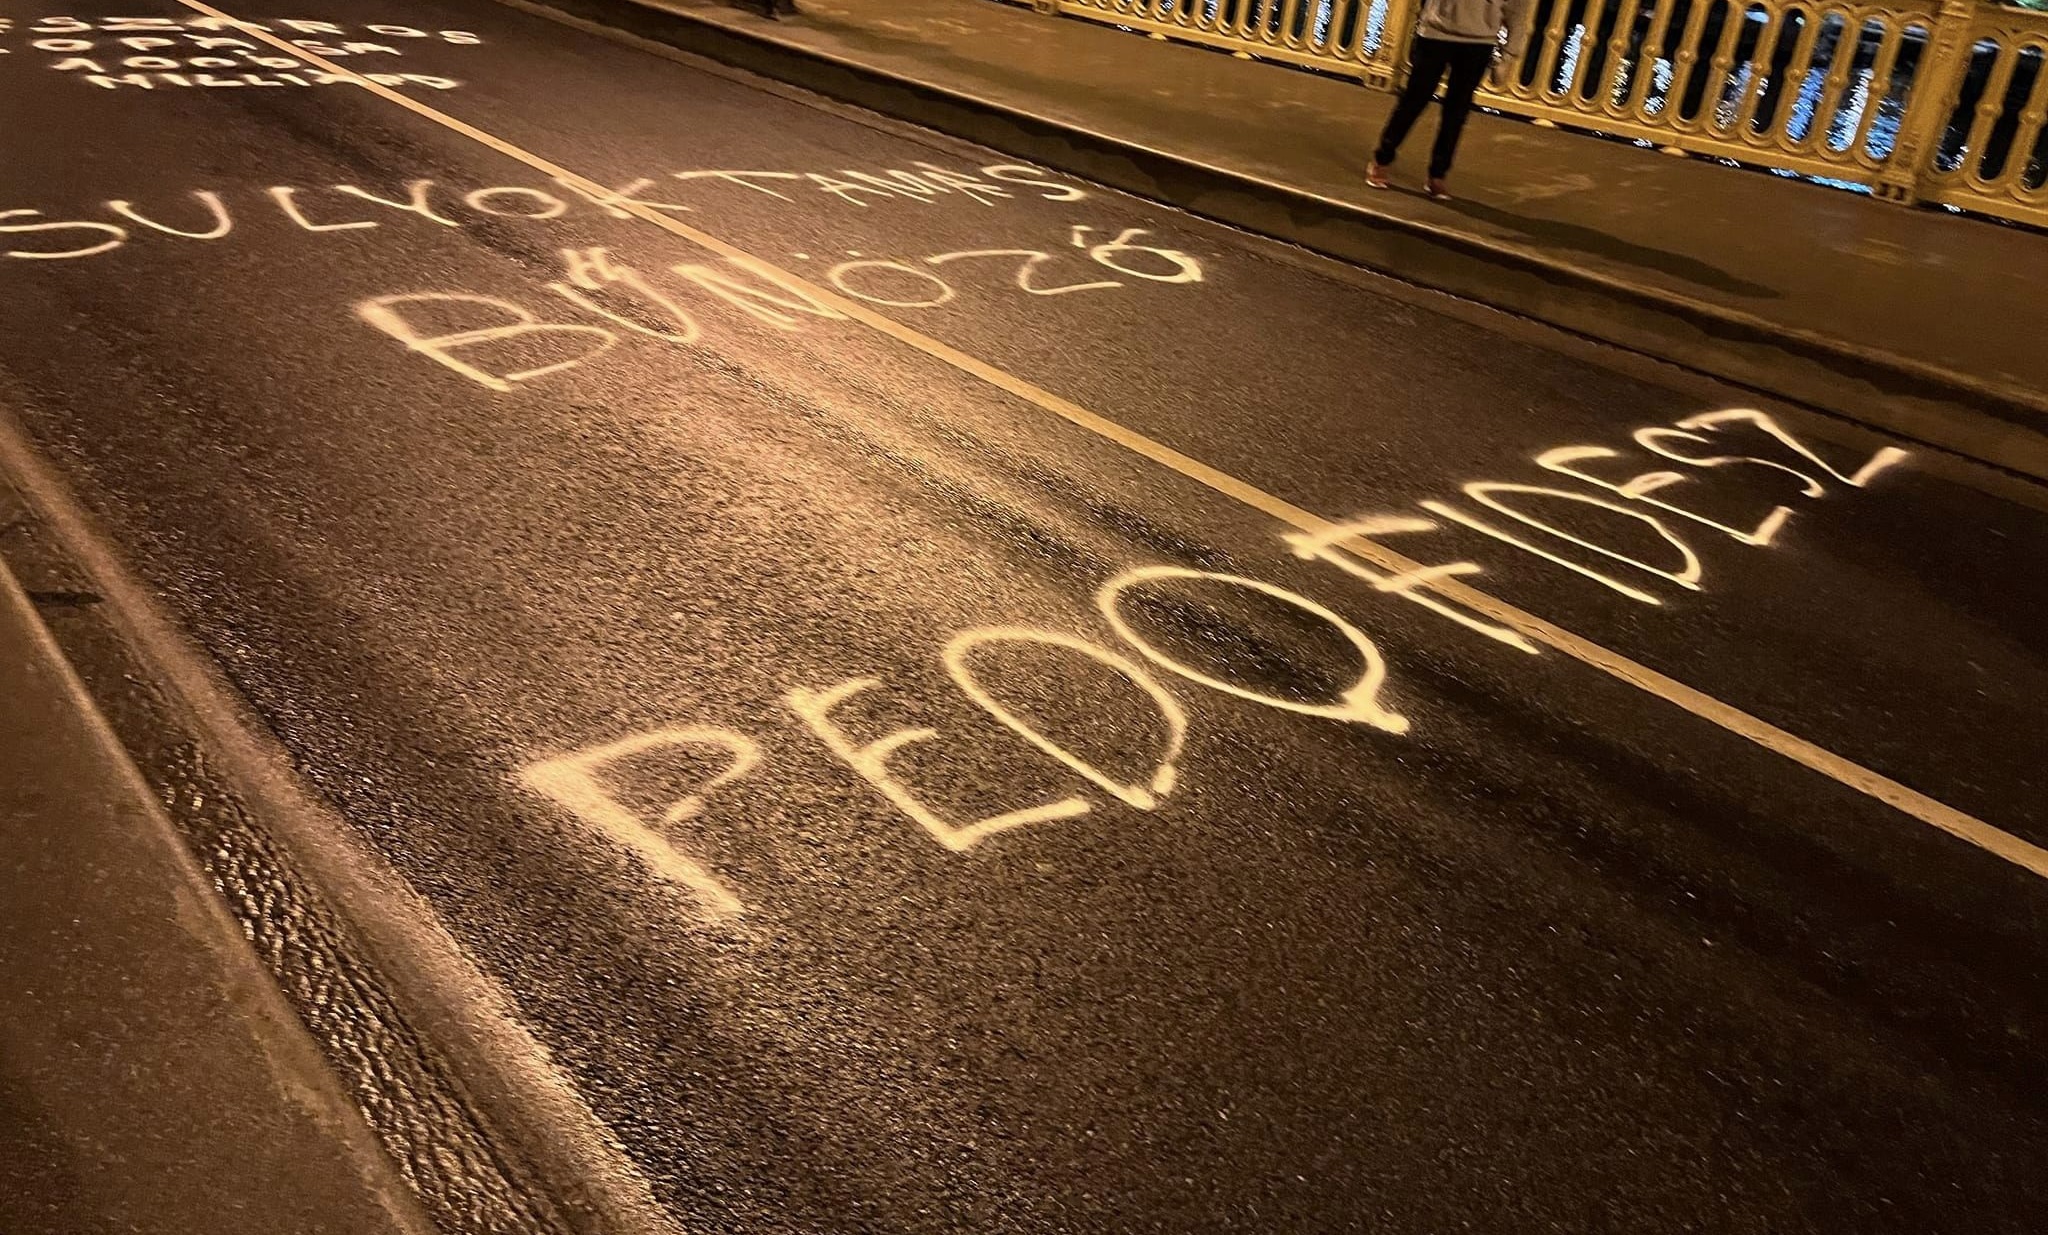 Pedofidesz, Stop akku –  a Fidesz bűneit festették fel a Békemenet útvonalára DK-s aktivisták